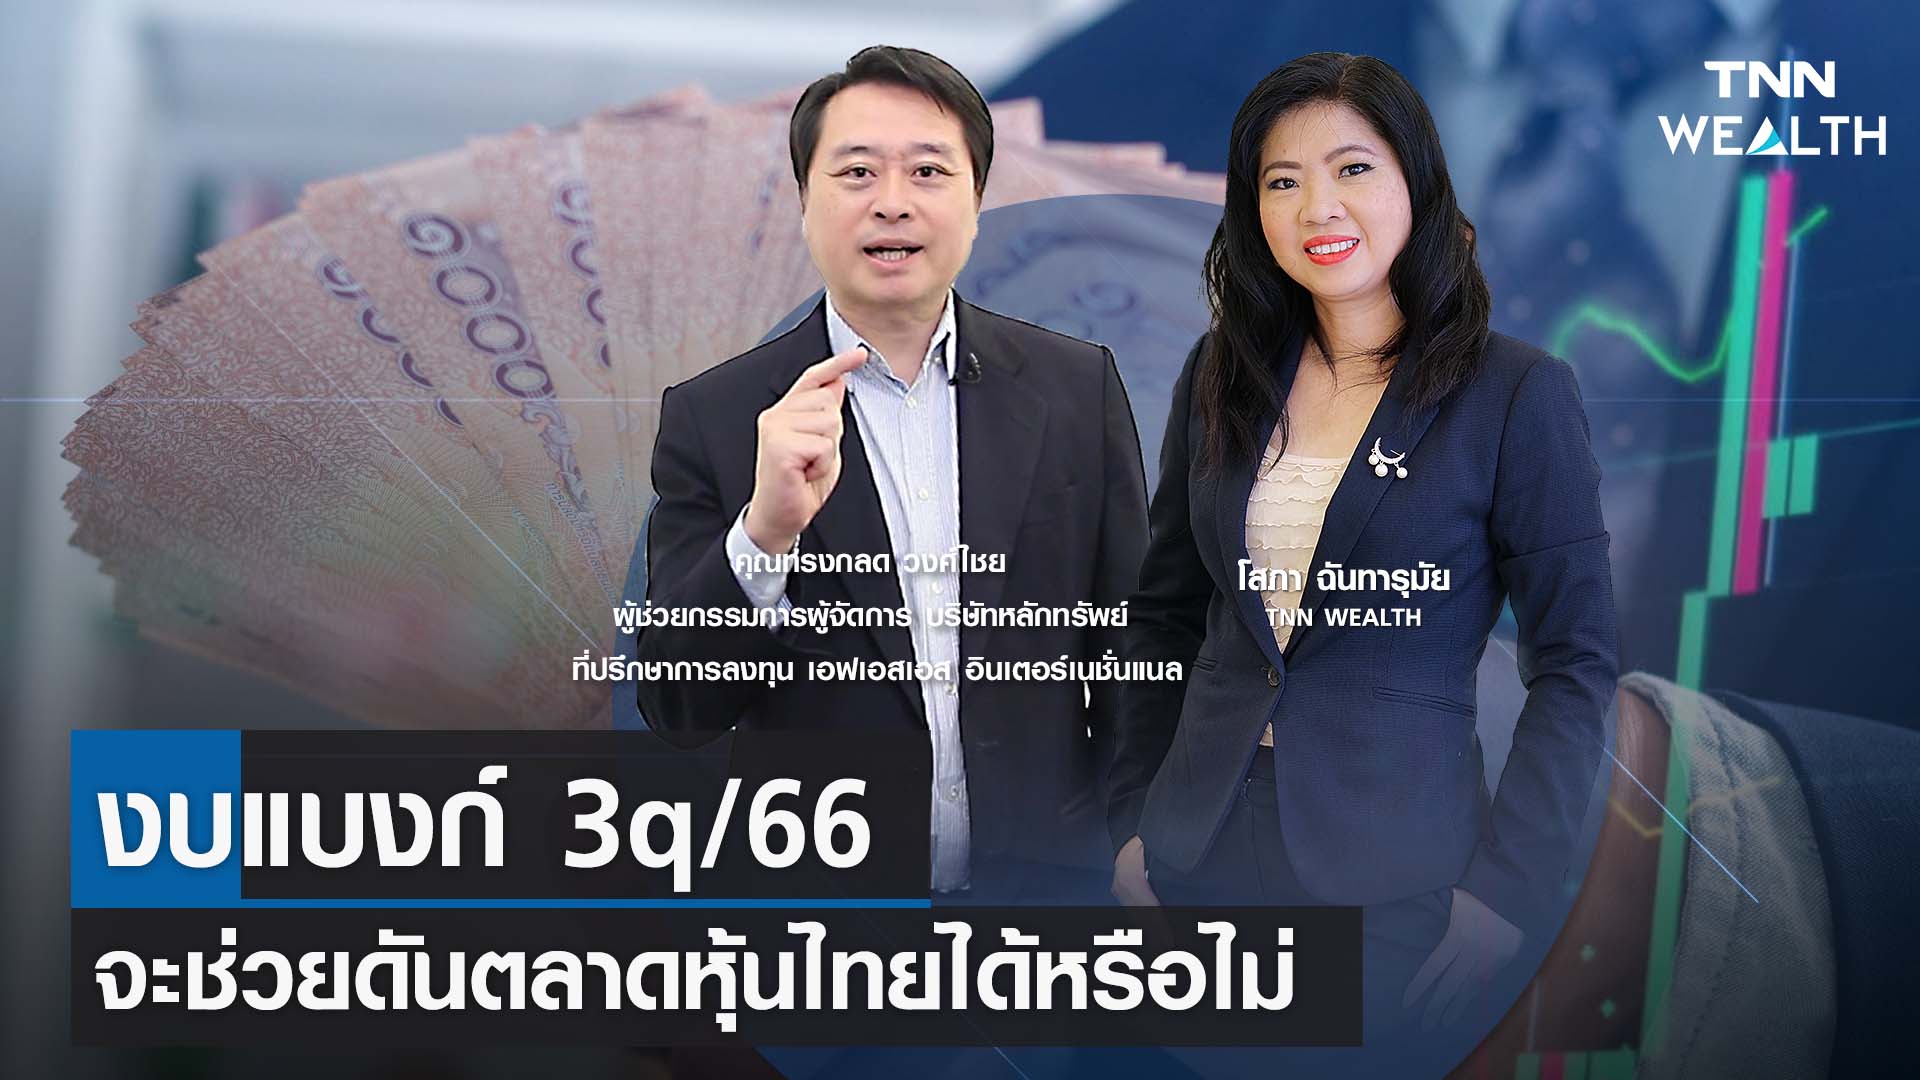 งบแบงก์ 3q/66 จะช่วยดันตลาดหุ้นไทยได้หรือไม่ กับคุณทรงกลด วงศ์ไชย I TNN WEALTH 19 ค.ค. 66